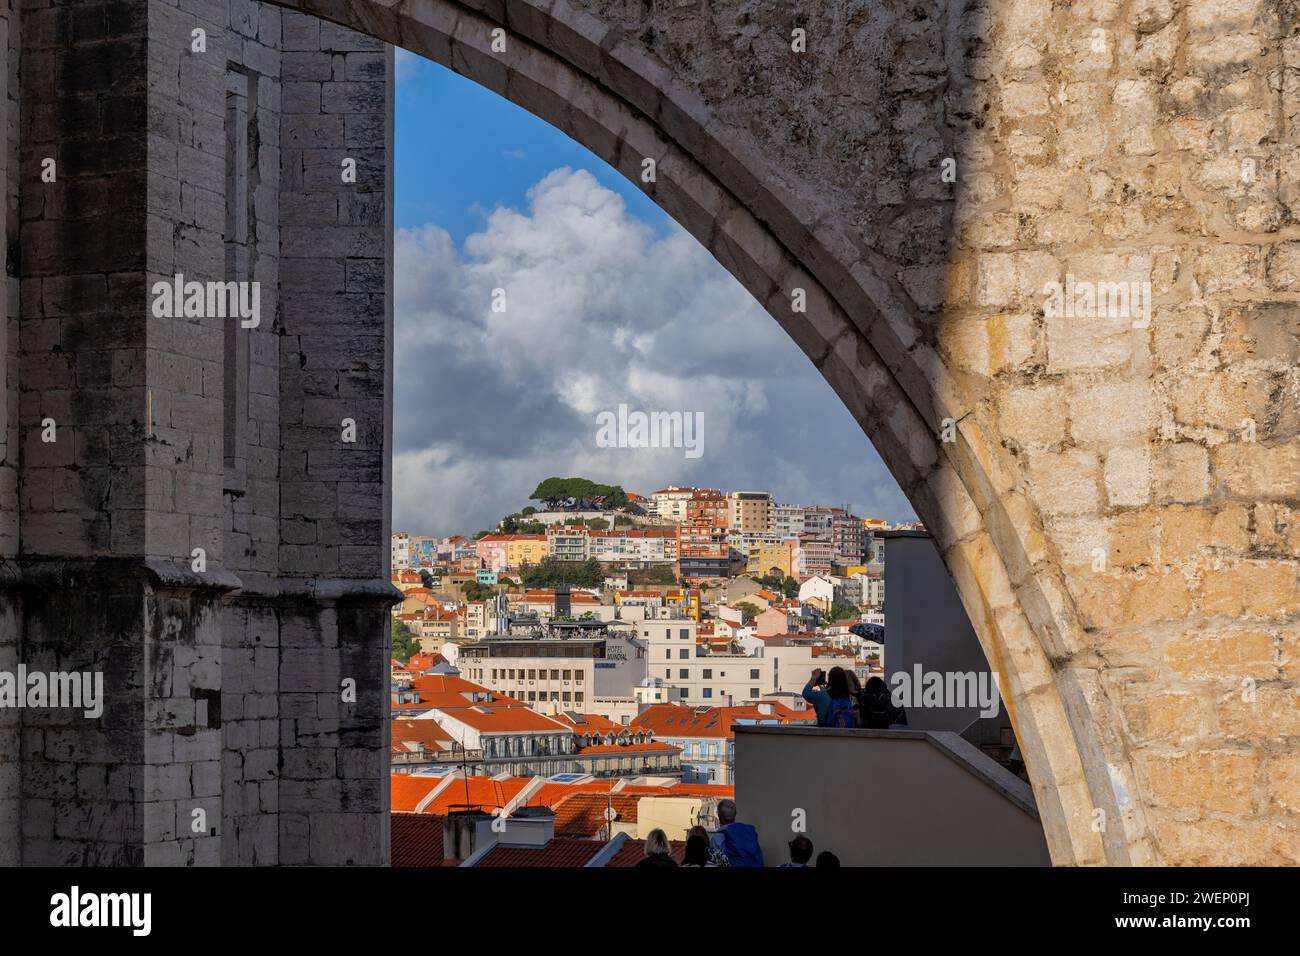 Bogenförmiger Blick auf die Stadt Lissabon in Portugal. Fliegender Stützbogen des Carmo-Klosters. Stockfoto